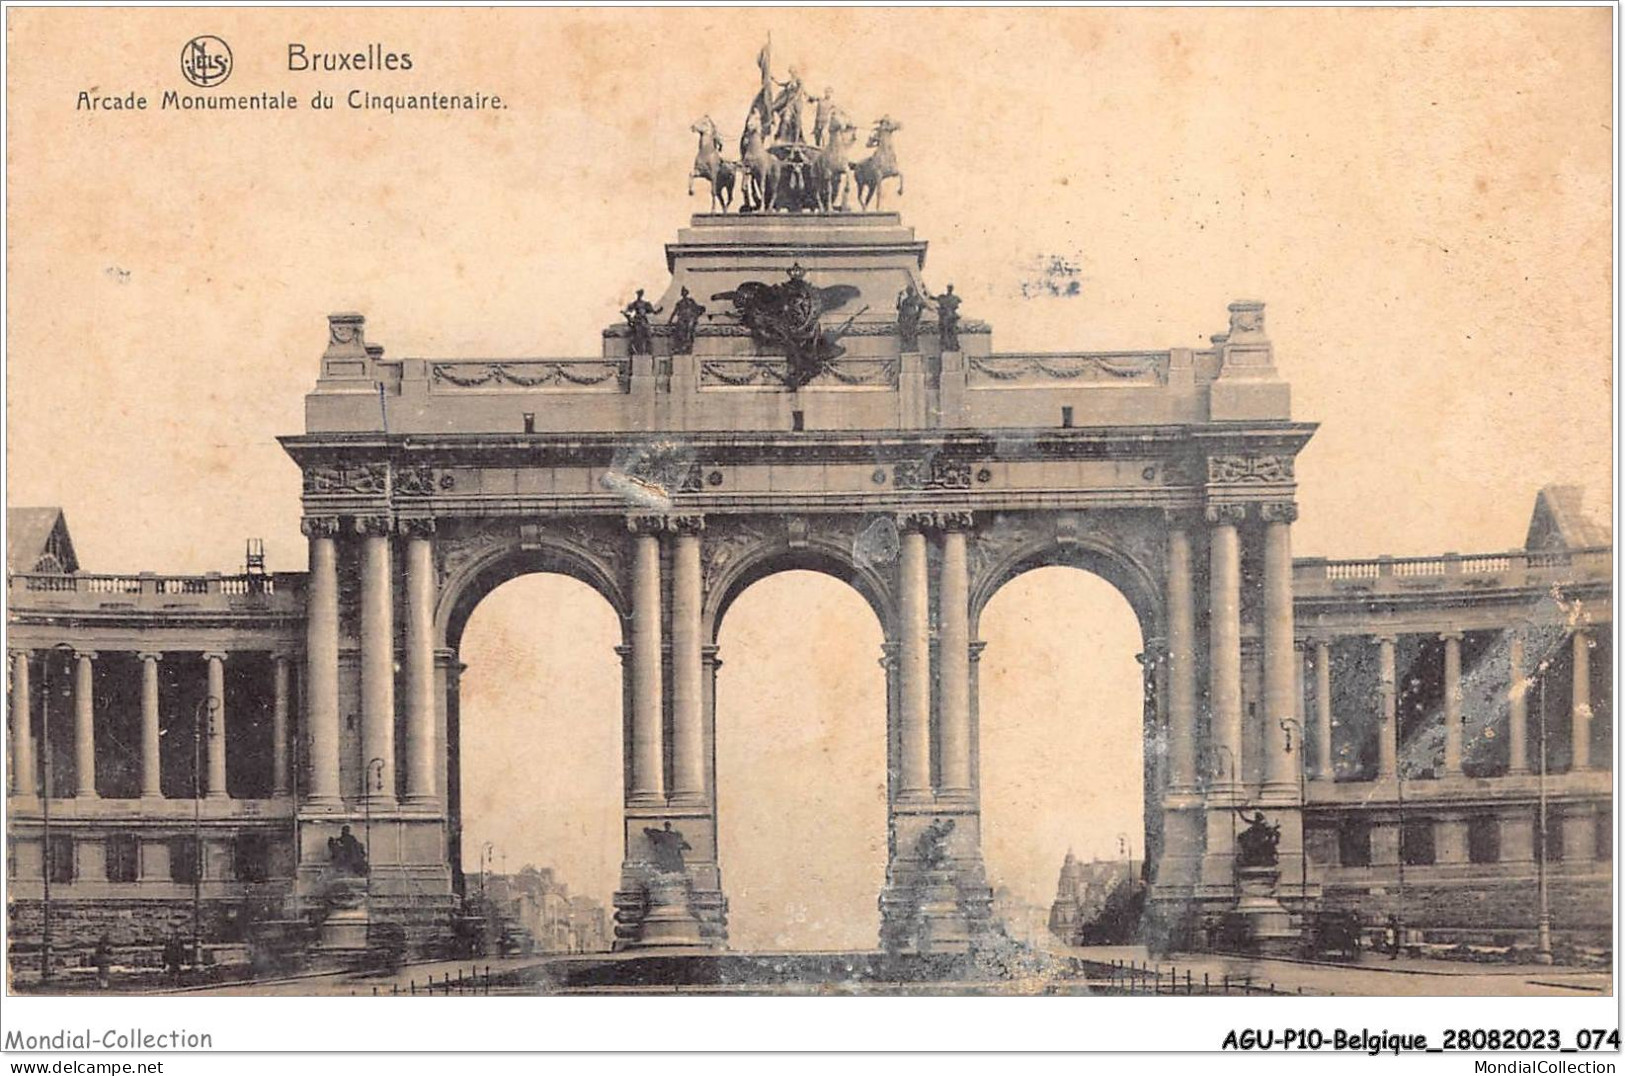 AGUP10-0846-BELGIQUE - BRUXELLES - Arcade Monumentale Du Cinquantenaire - Monuments, édifices